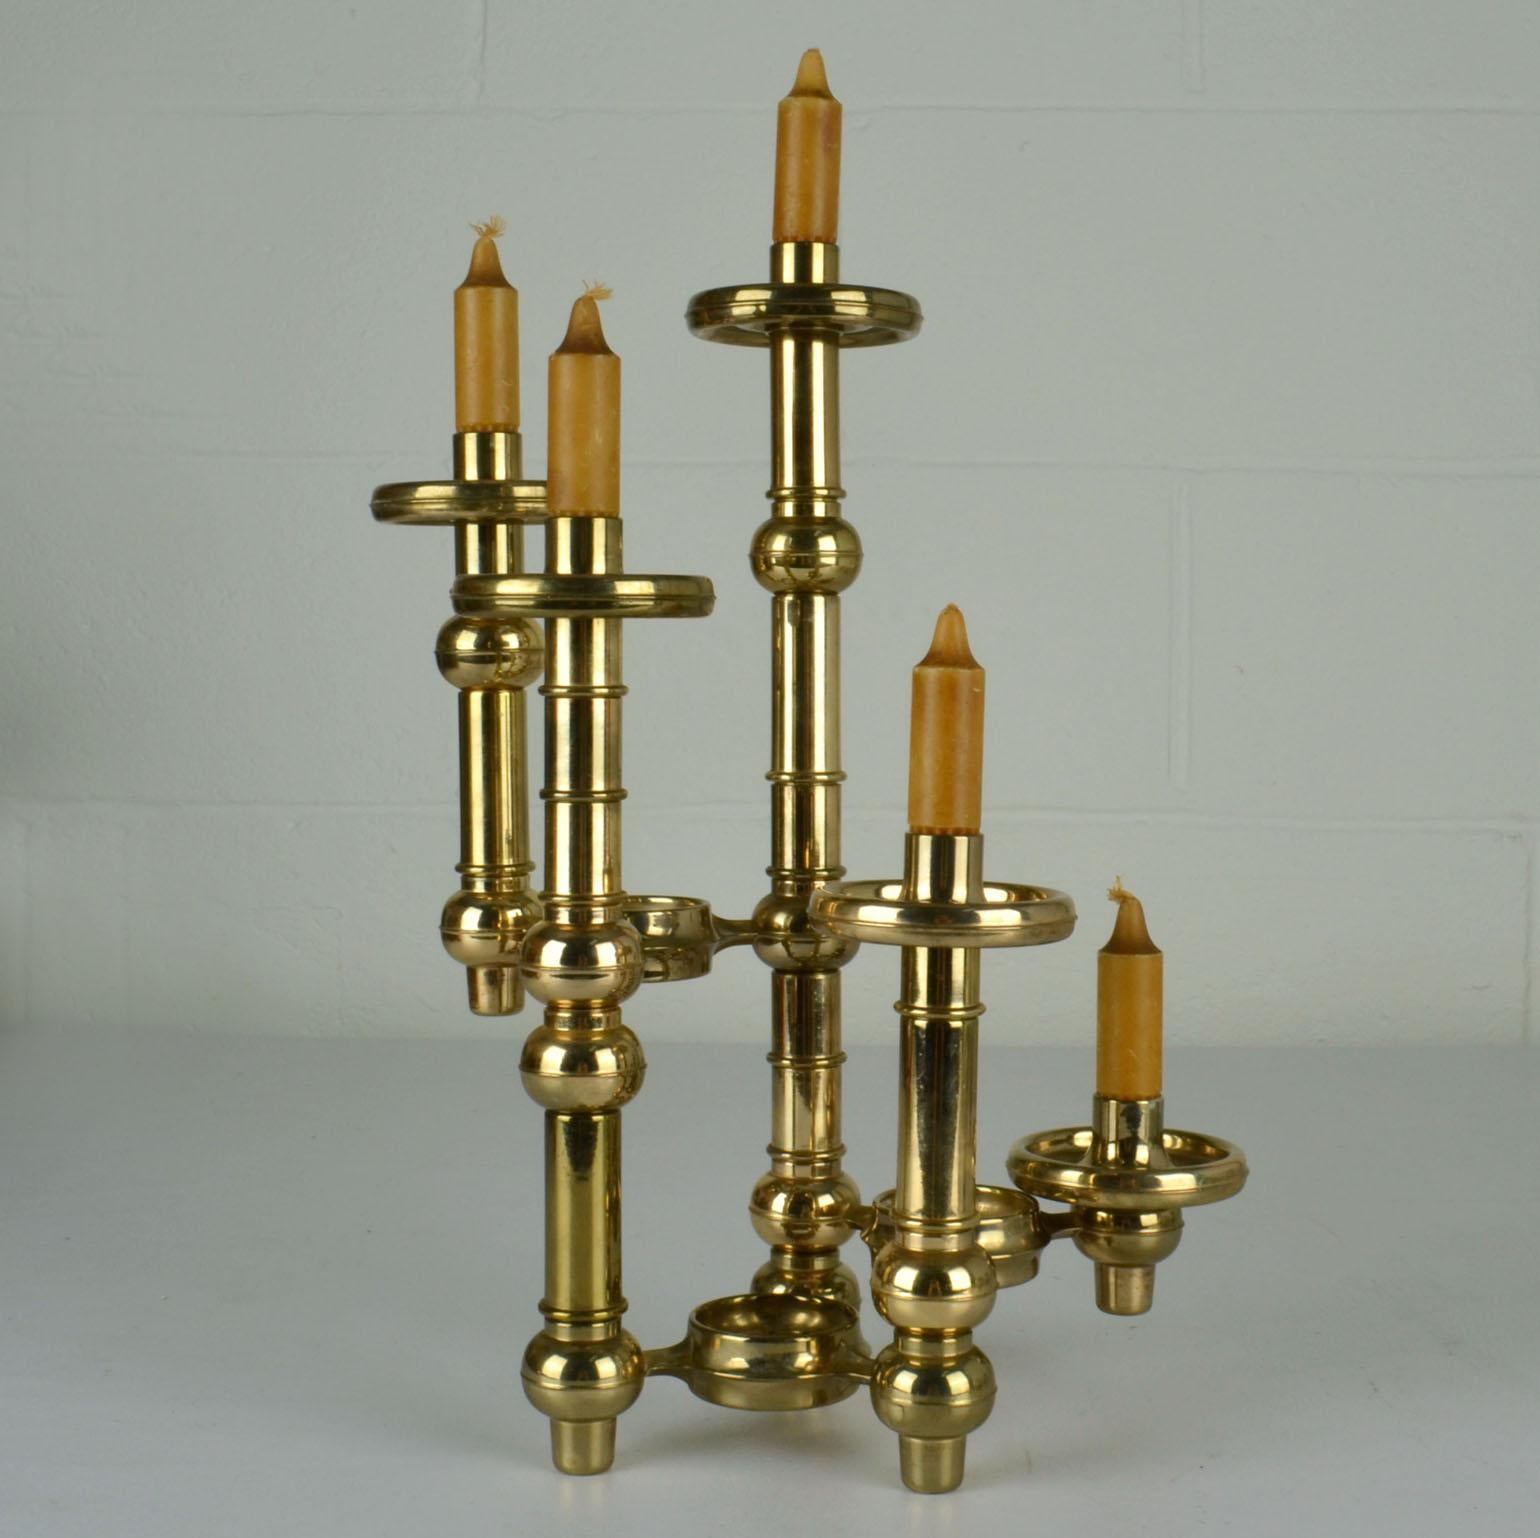 Scandinavian Modern Modular Brass Candelabra with Glass Shades For Sale 7